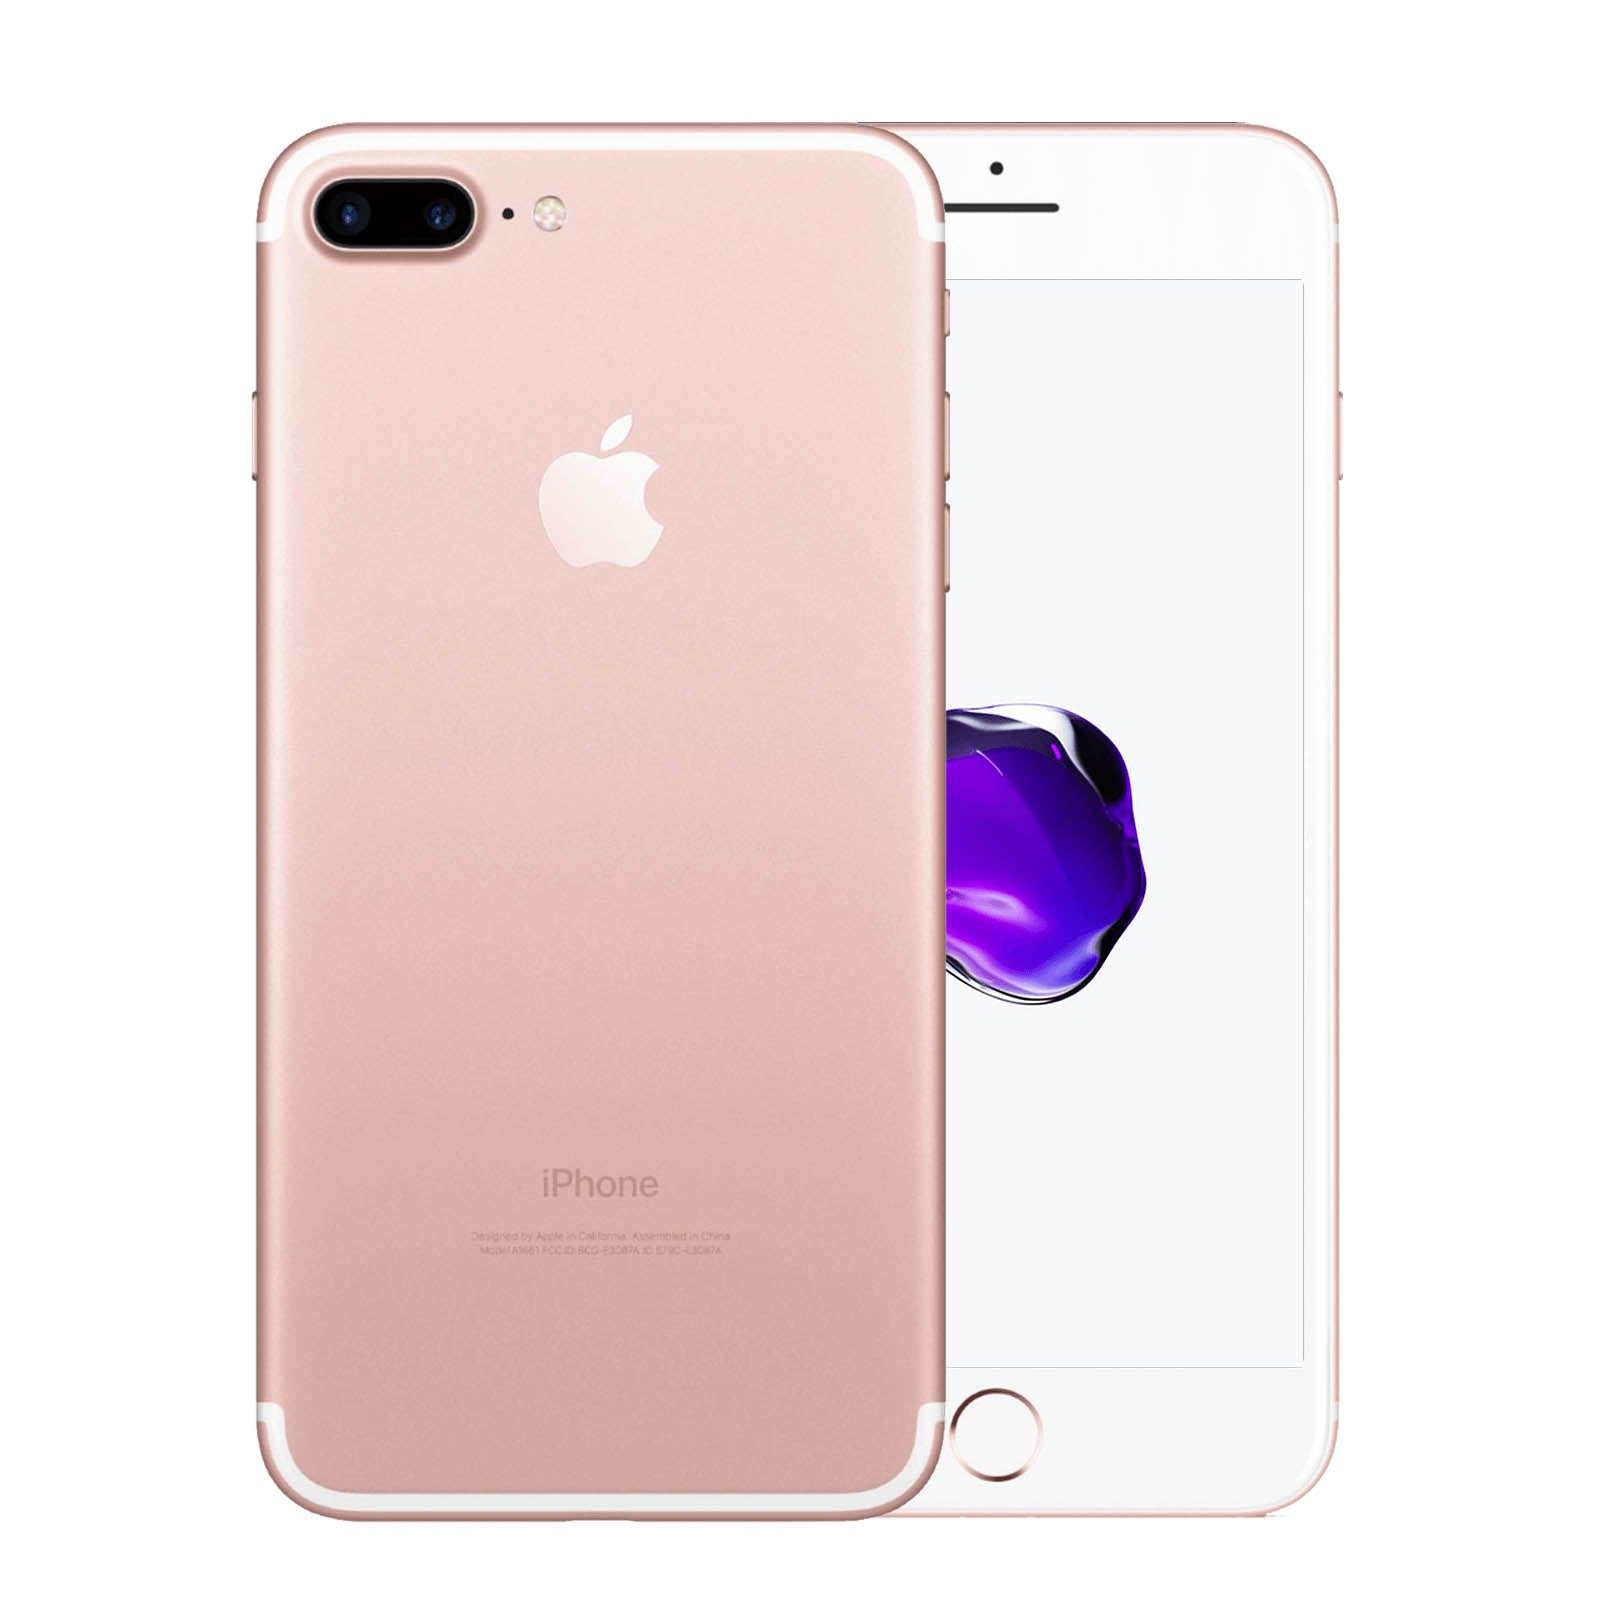 Apple iPhone 7 Plus 128GB Roségold Fair - Ohne Vertrag